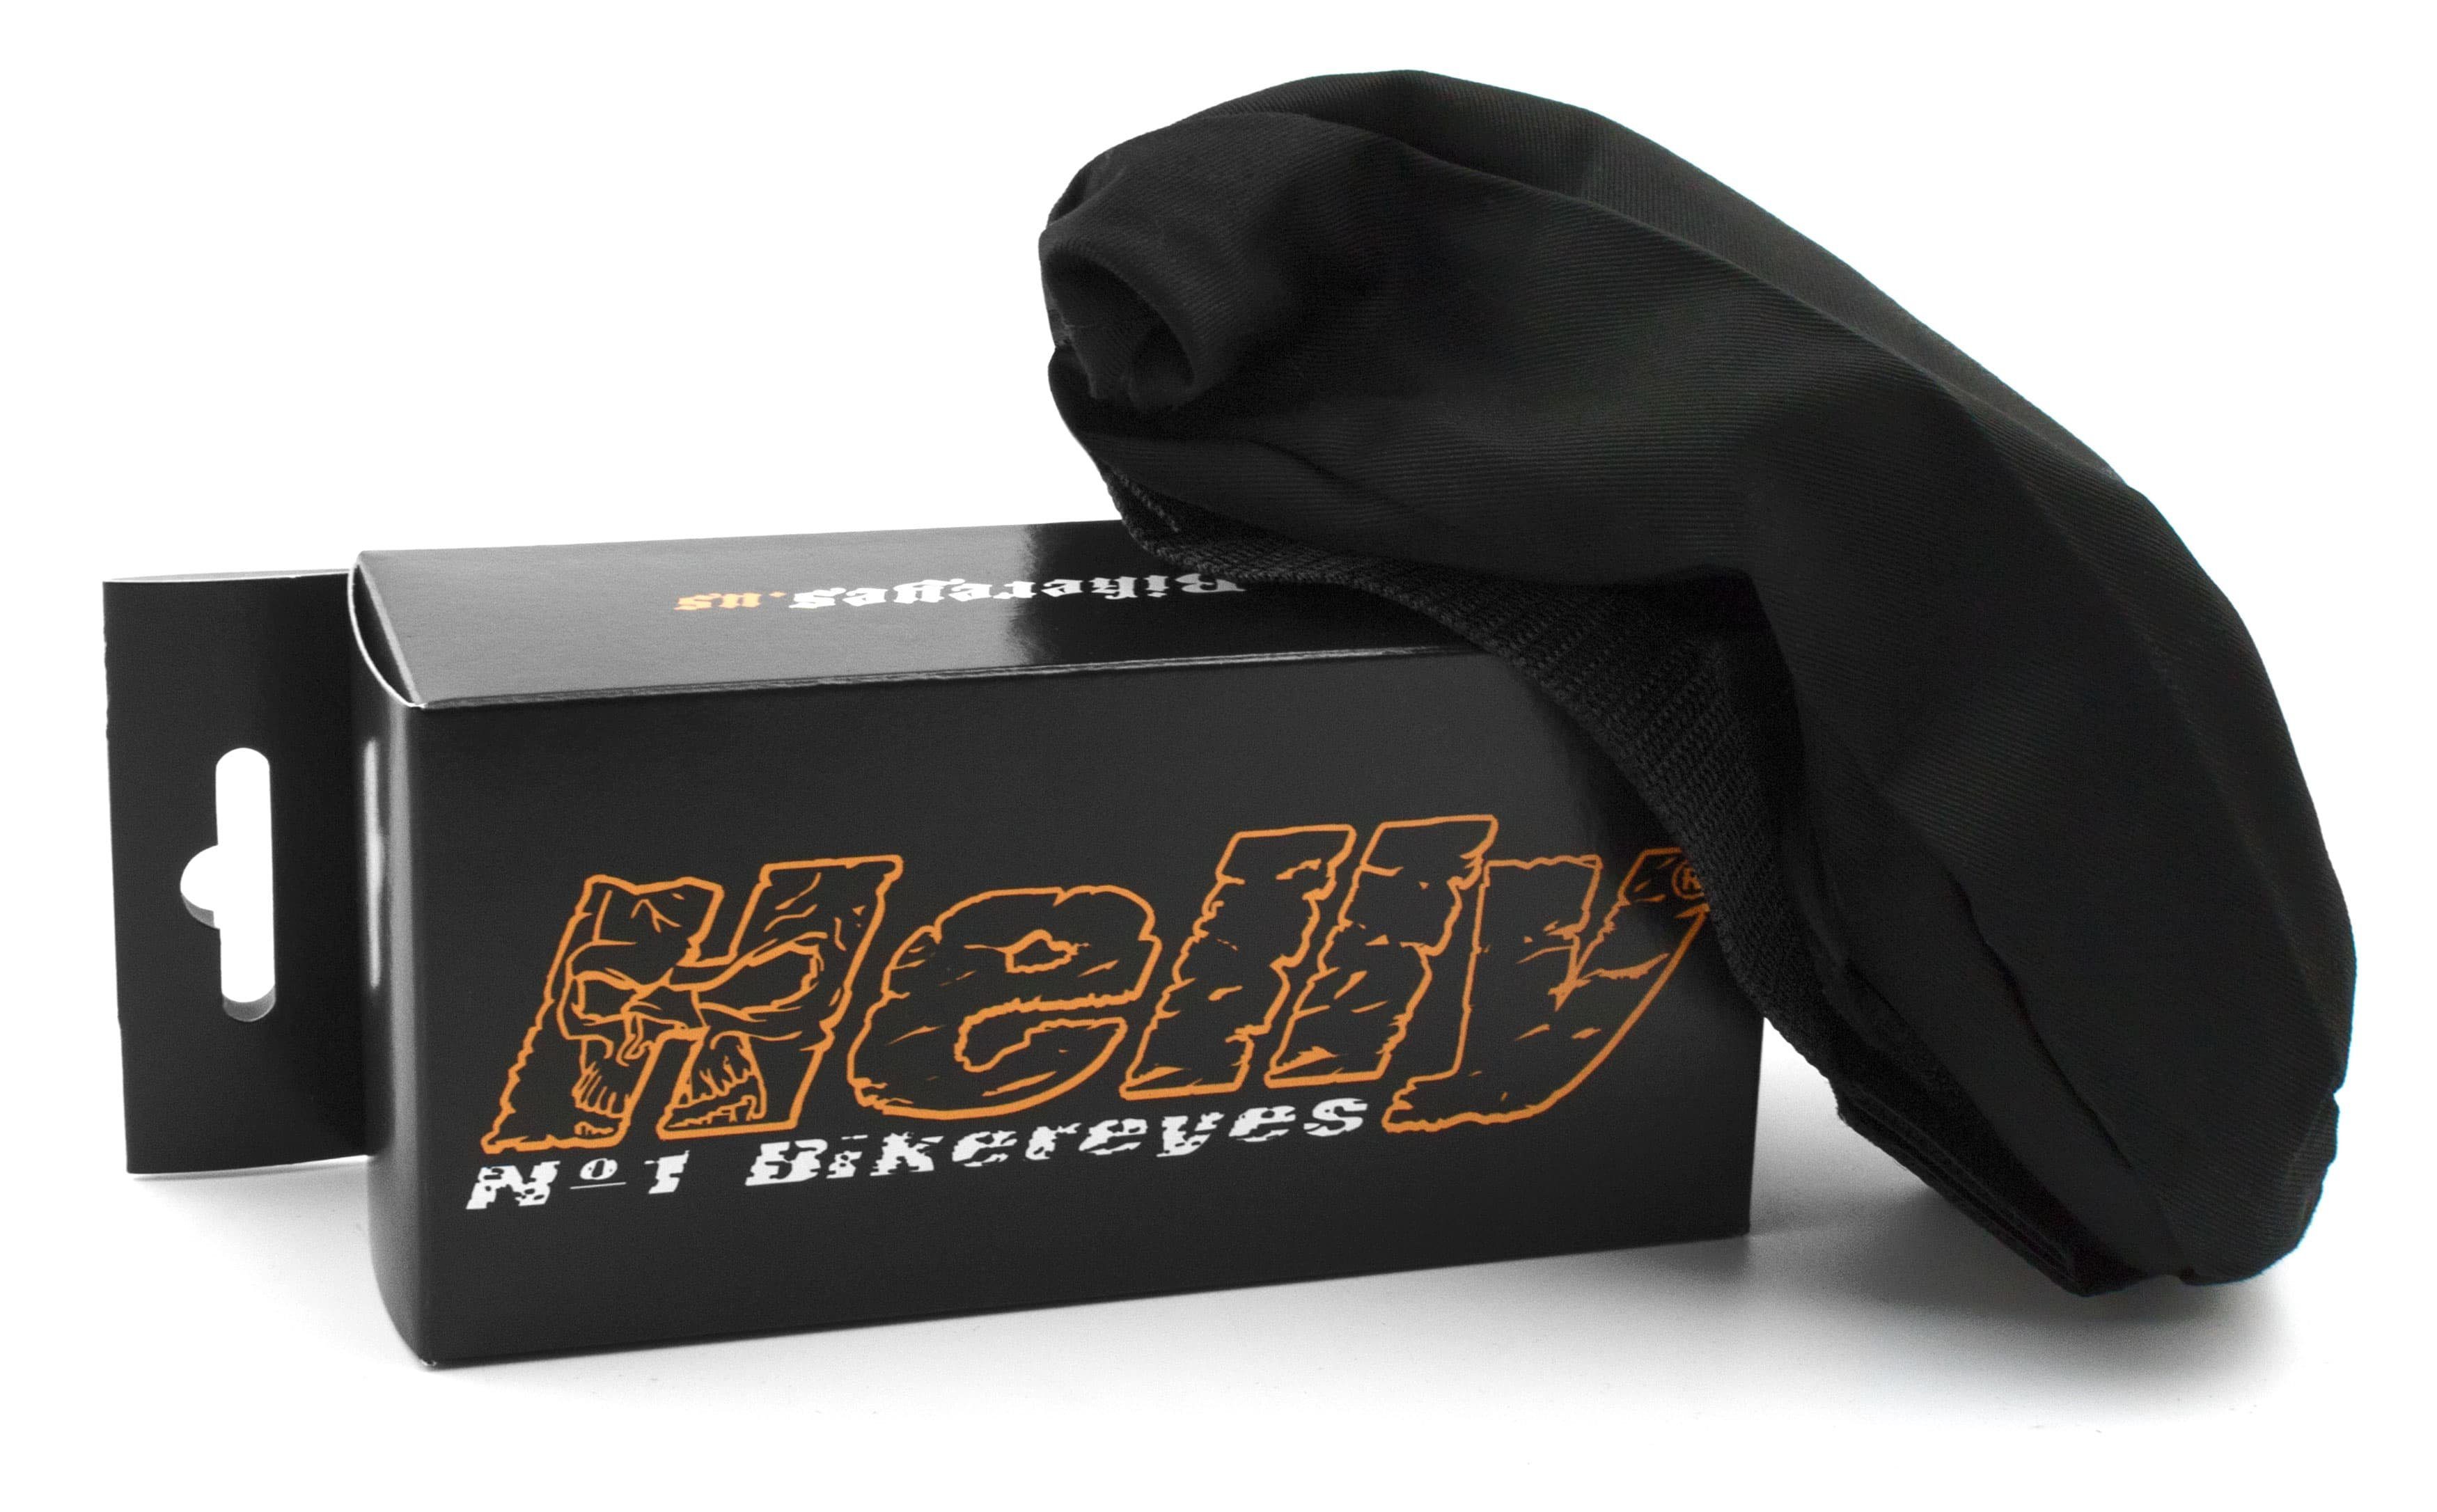 Helly - No.1 1390c, Motorradbrille Motorradbrille Bikereyes Kunststoff-Sicherheitsglas mit